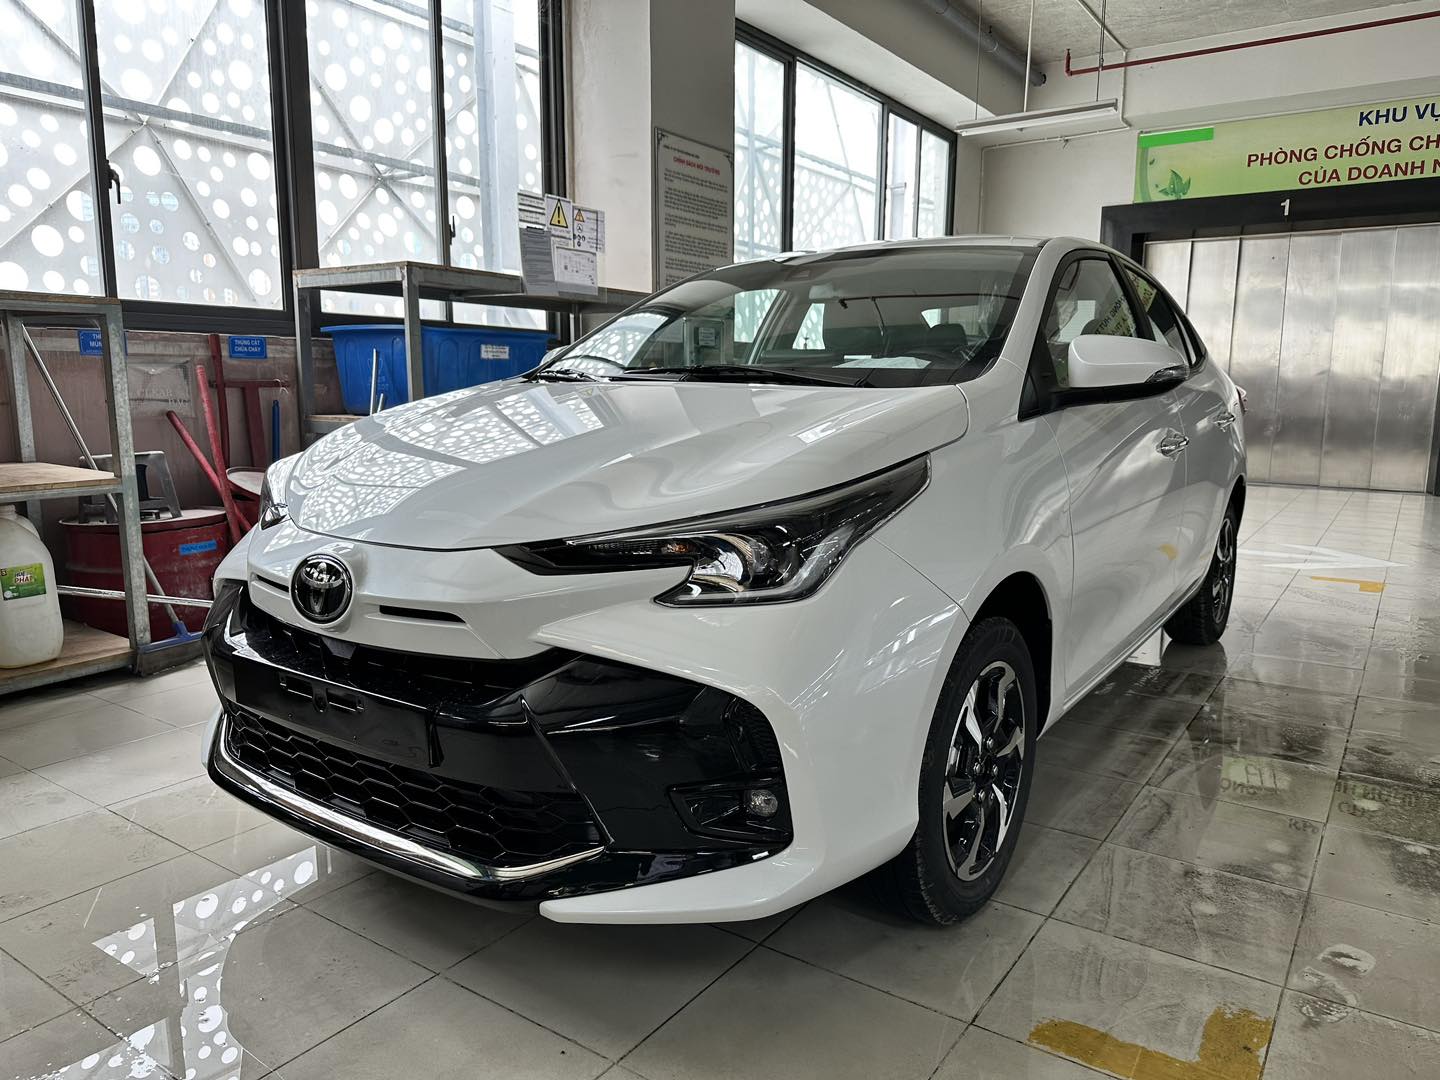 Thêm ảnh Toyota Vios 2023 tại đại lý: Liệu có lấy lại được ngôi vương doanh số? toyota-vios-2023-5-1.jpg